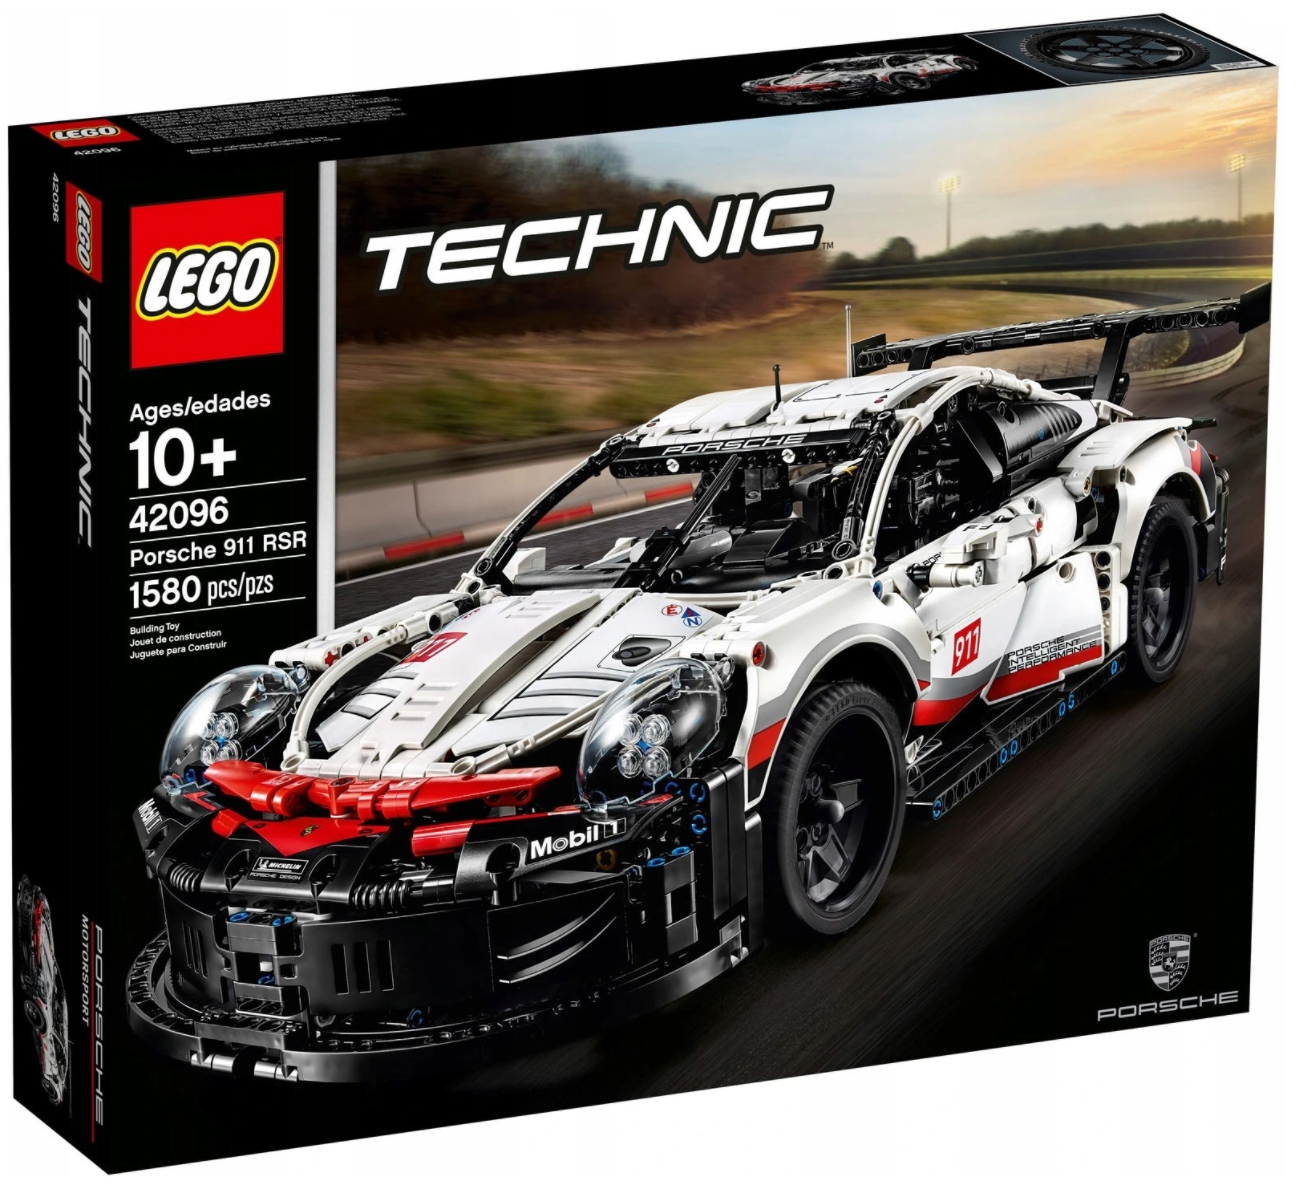 LEGO TECHNIC 42096 Porsche 911 RSR Model Auto 10+